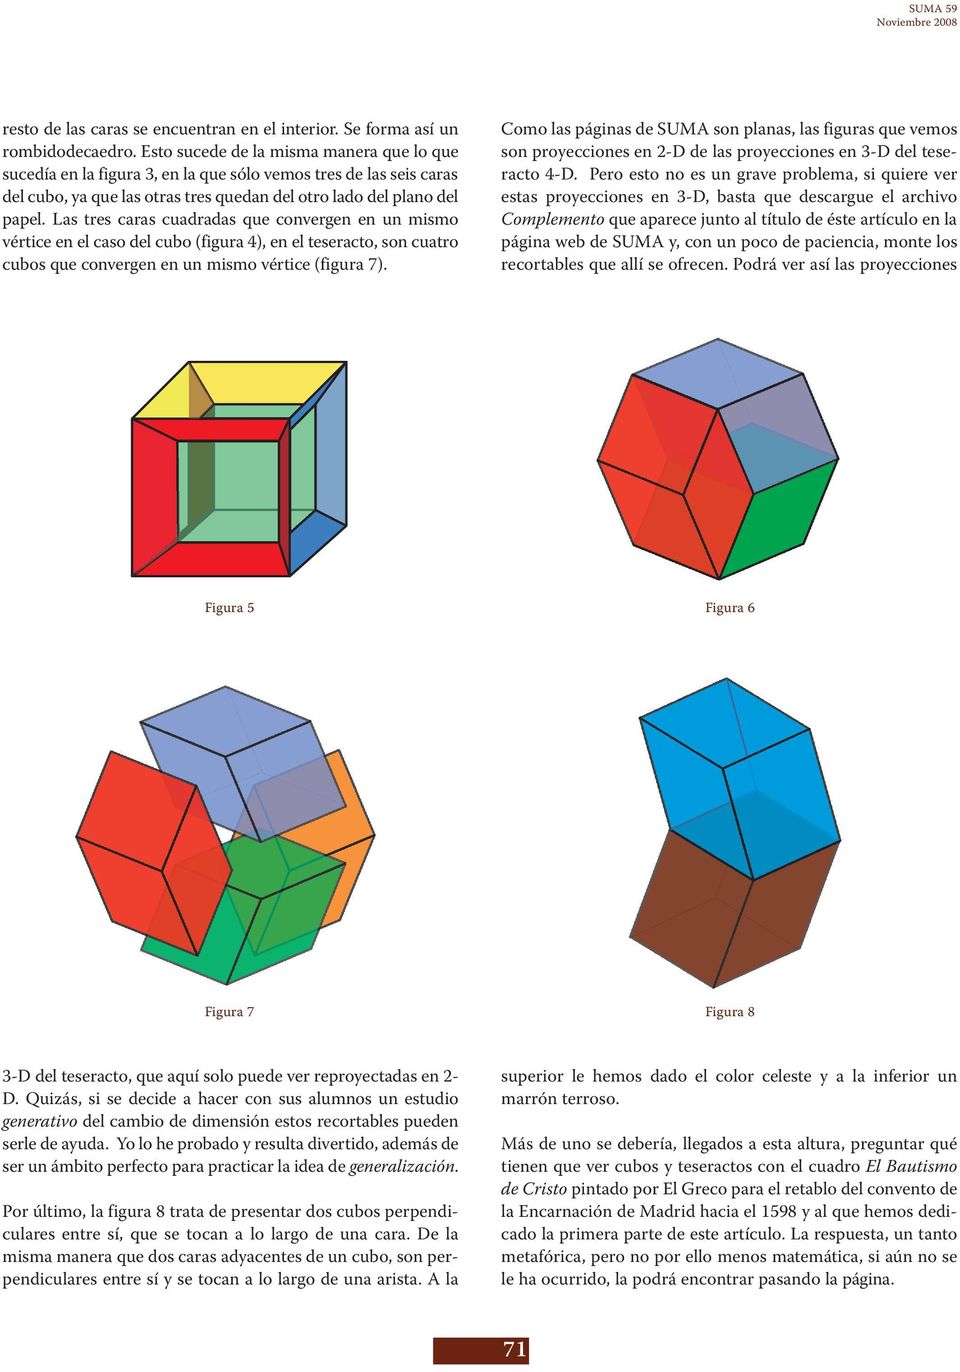 Las tres caras cuadradas que convergen en un mismo vértice en el caso del cubo (figura 4), en el teseracto, son cuatro cubos que convergen en un mismo vértice (figura 7).